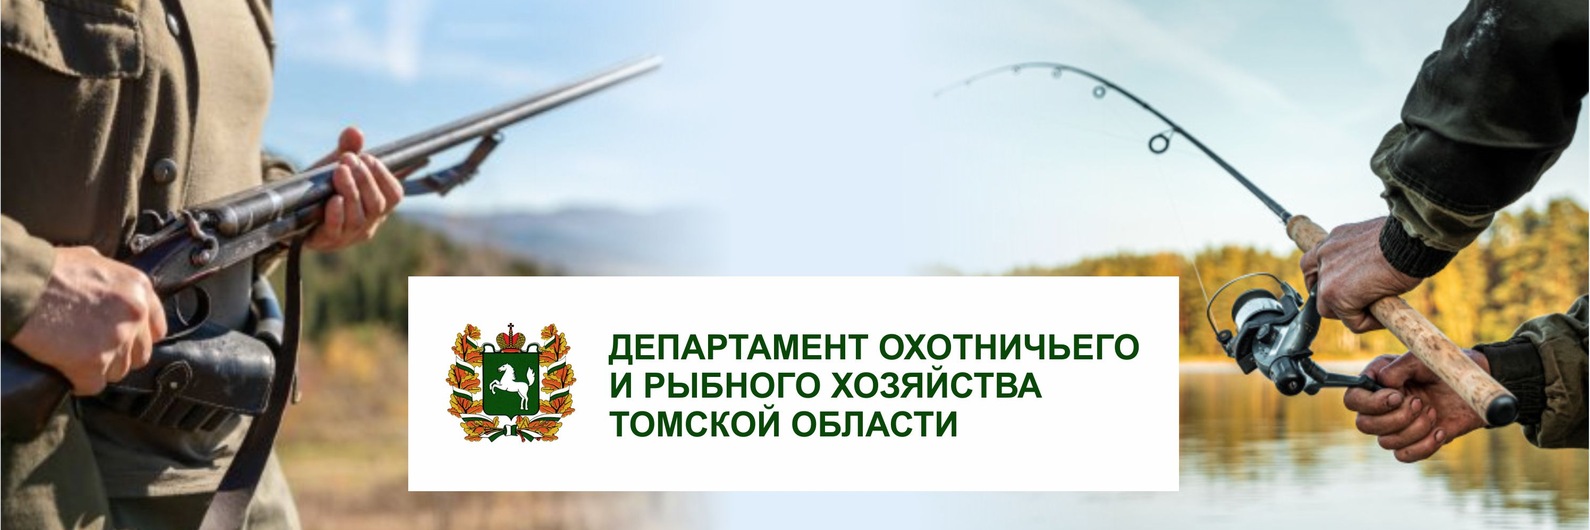 Департамент осуществляет прием заявок для осуществления традиционного рыболовства на территории Томской области на 2025 год